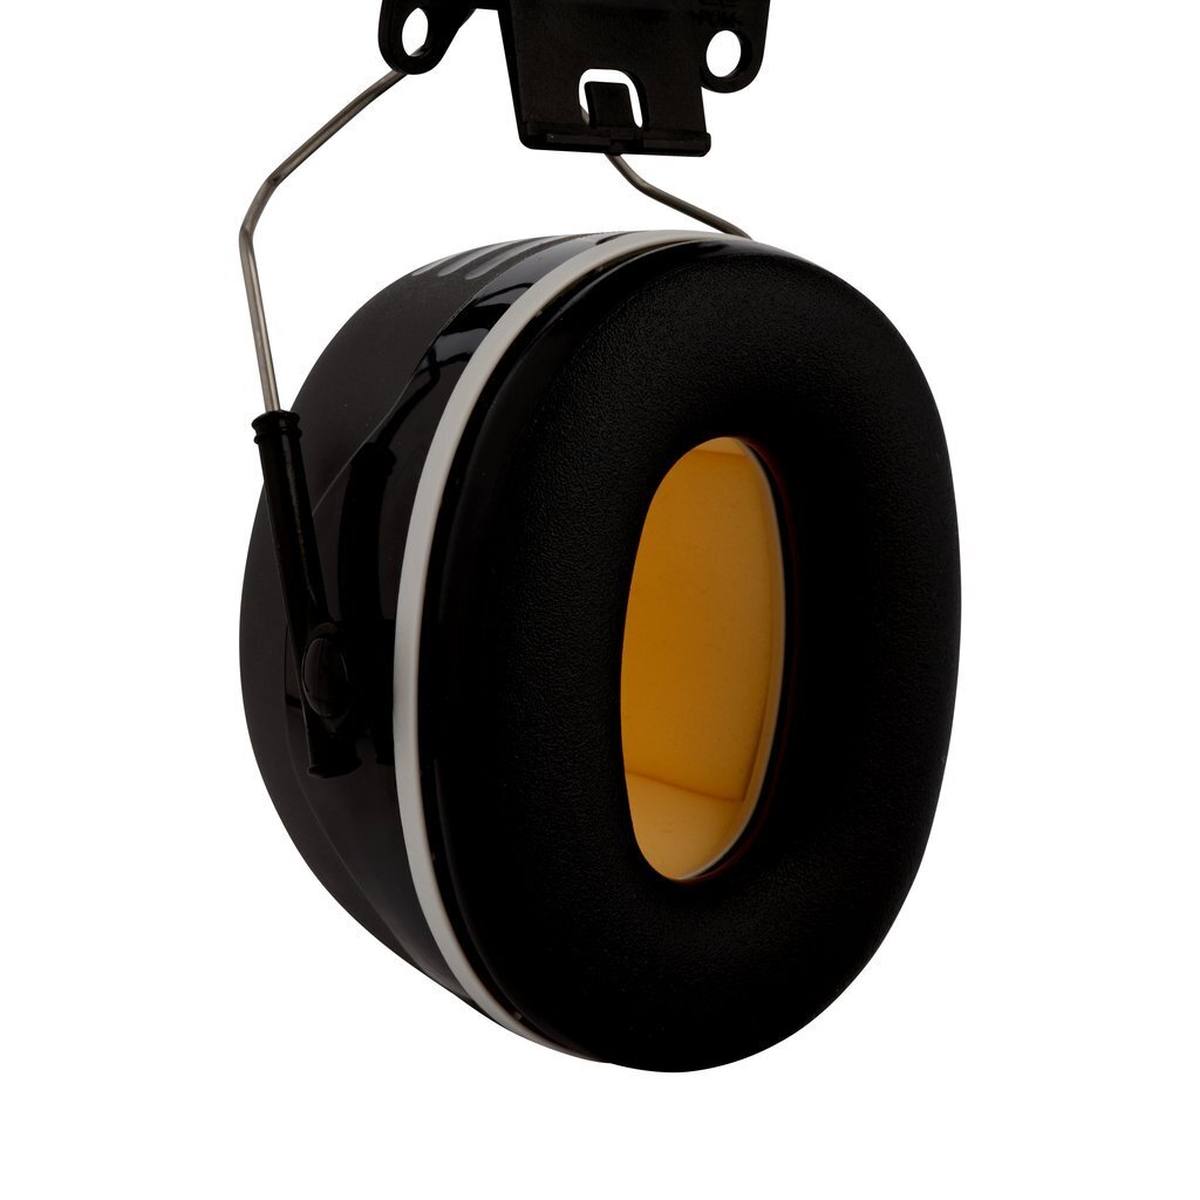 3M Peltor Kapselgehörschutz, X5P3E Helmbefestigung, schwarz, SNR = 36 dB mit Helmadapter P3E (für alle 3M Helme, ausgenommen G2000)